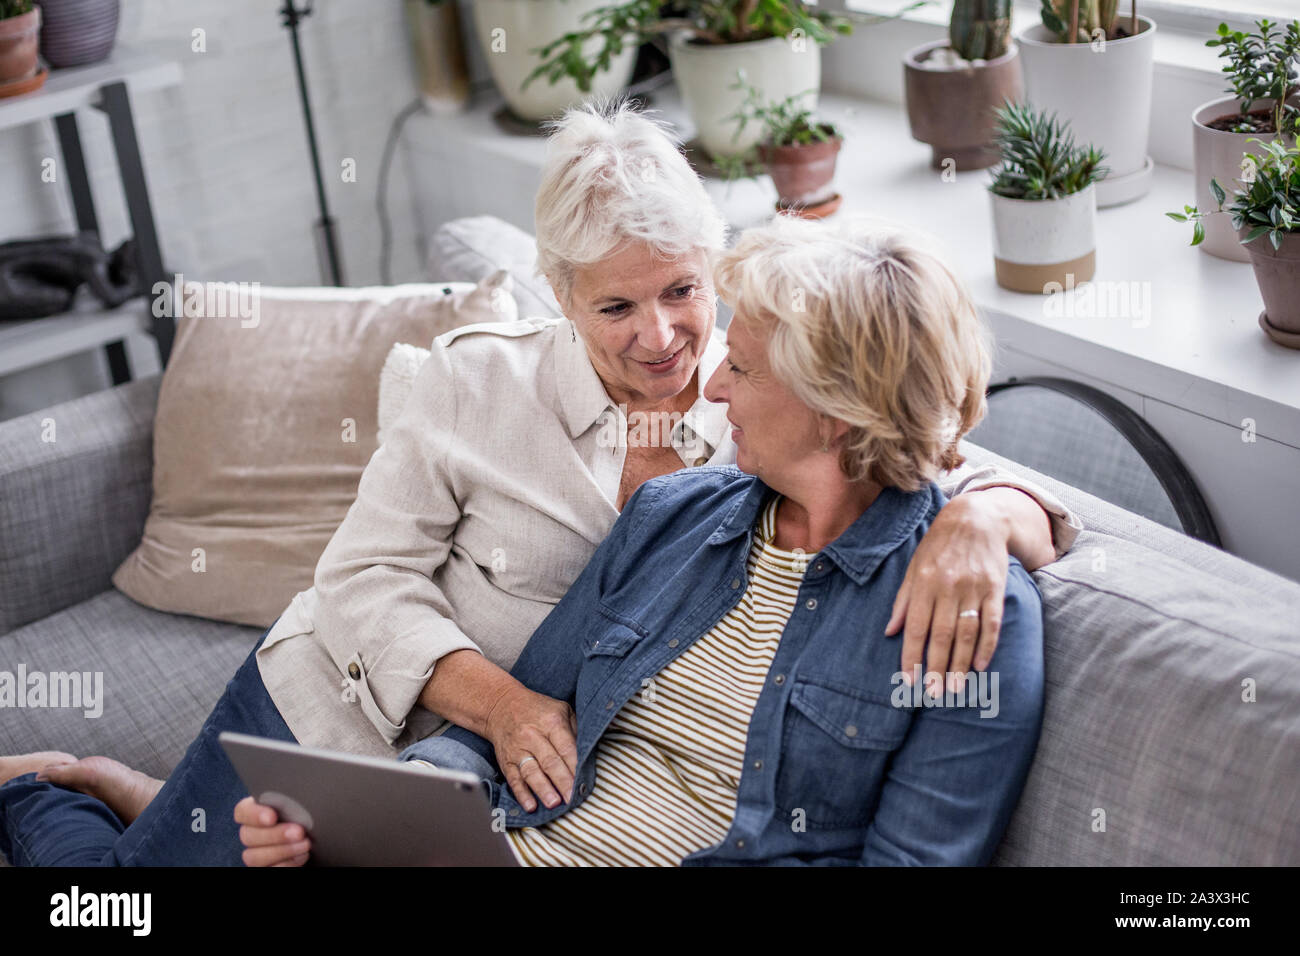 Coppia lesbica matura guardando a tavoletta digitale insieme sul divano Foto Stock